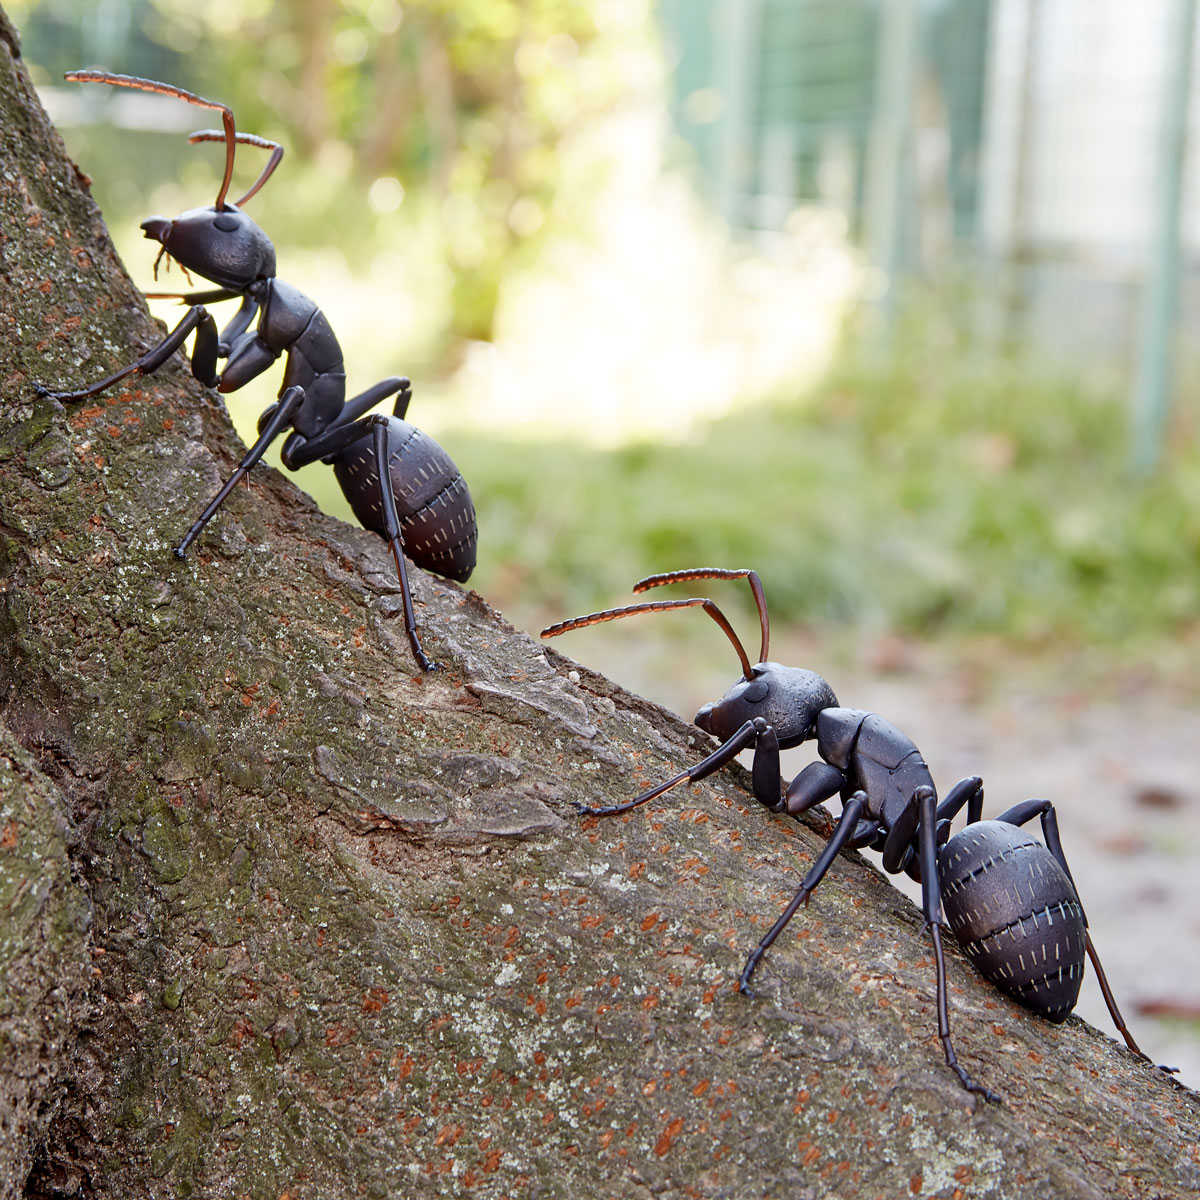 《夏本舖》日版 海洋堂 REVO GEO 日本弓背蟻 昆蟲 螞蟻 節肢動物 蟻科 山口式 輪轉 生物 擬真 模型 可動